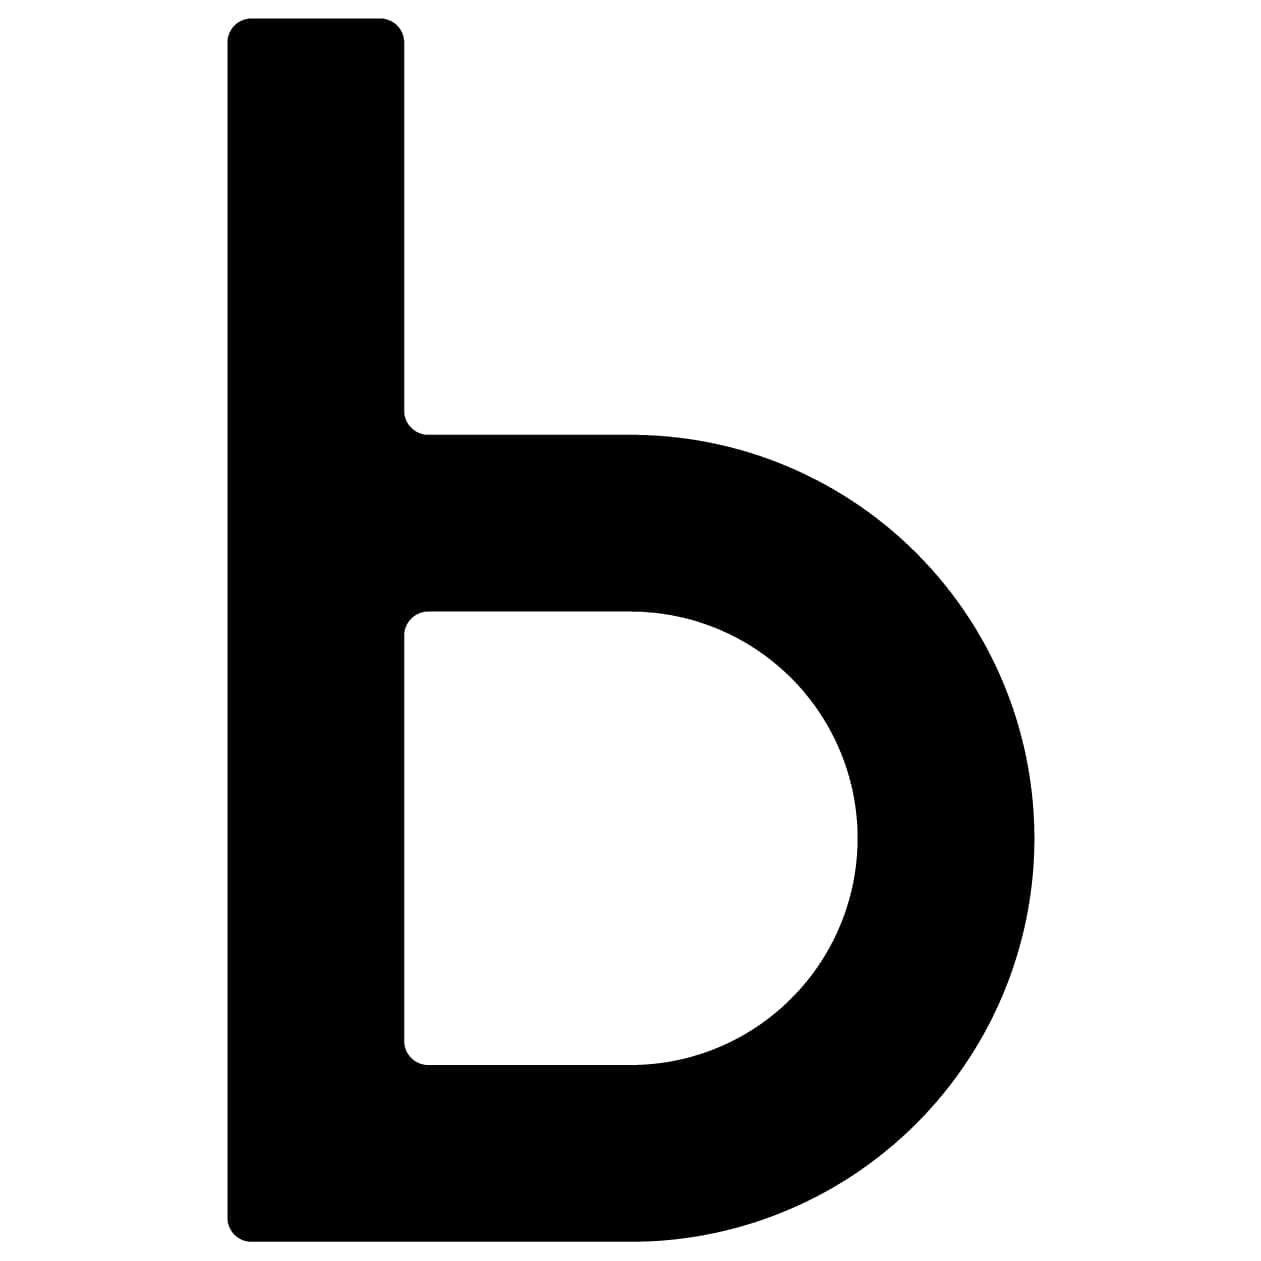 Samoprzylepny numer domu „B” - 40 mm w kolorze czarnym